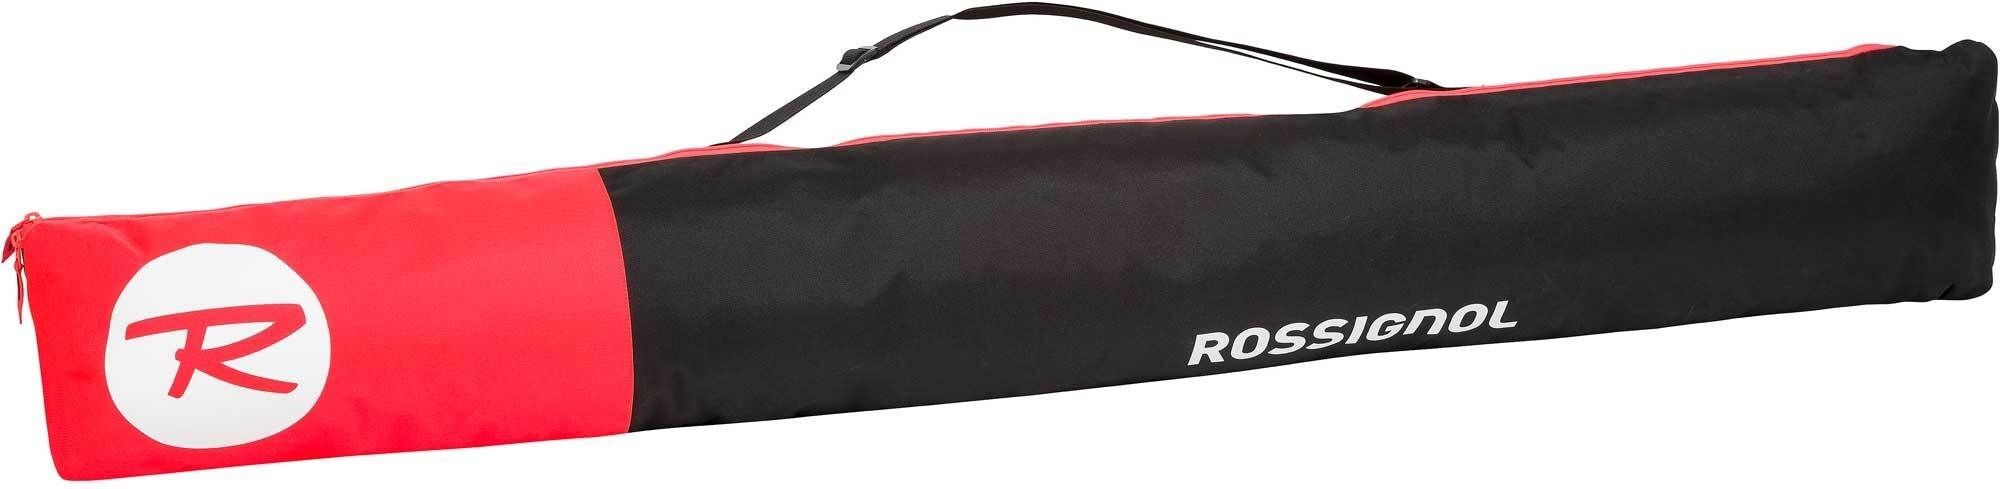 Rossignol Tactic Ski Bag extendable - Ski bag